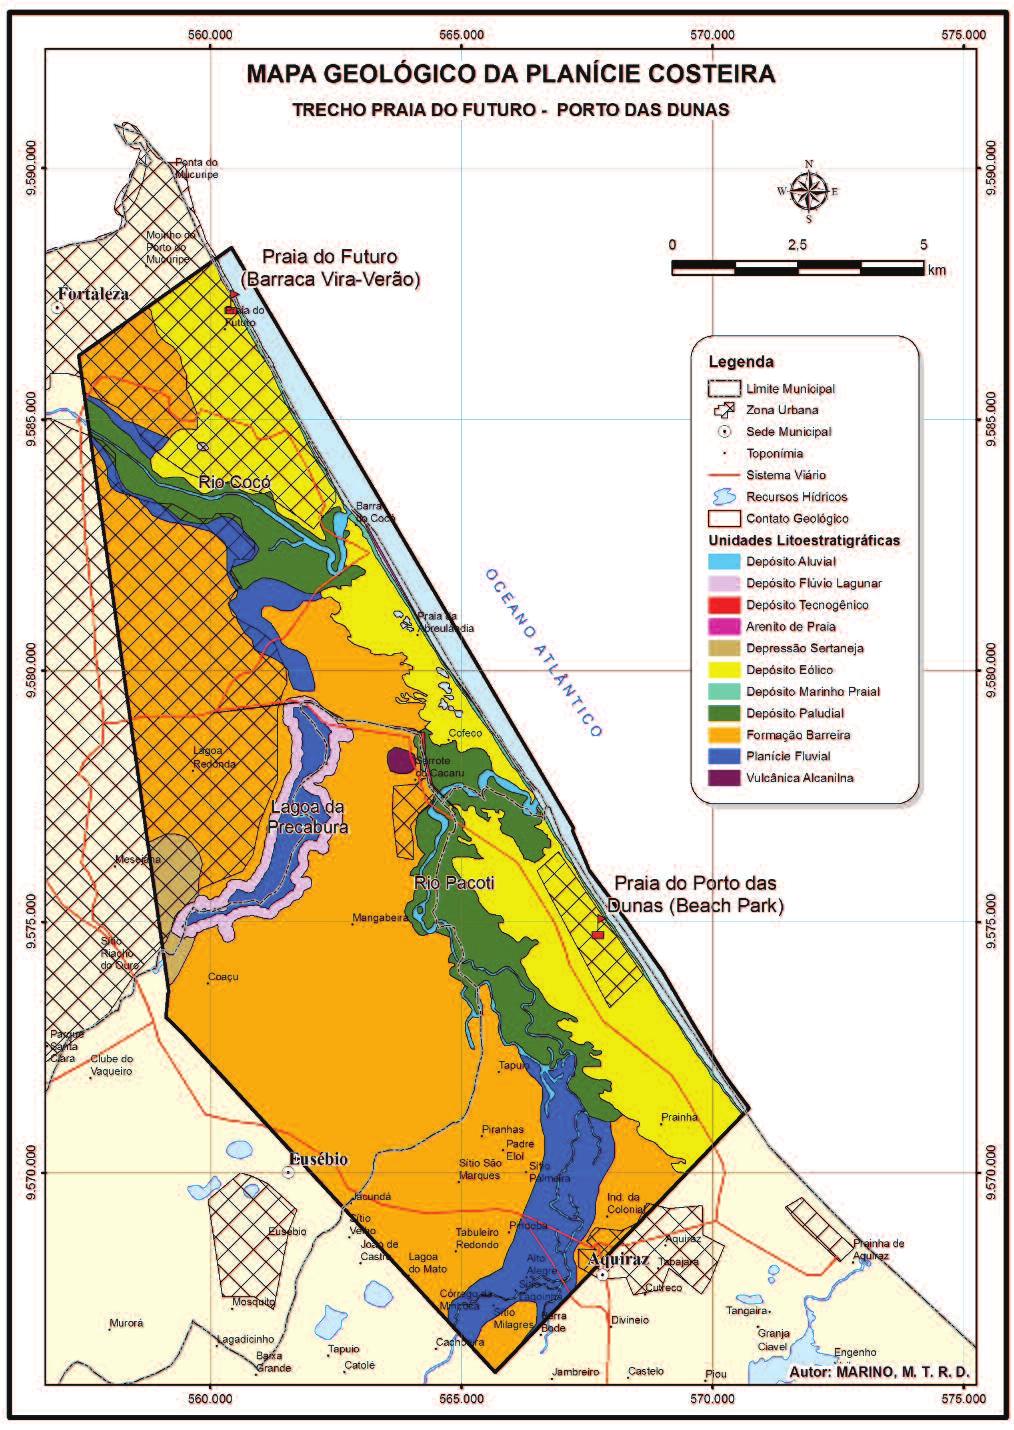 Figura 1. Mapa geológico e localização da área de estudo (segundo Marino et al., 2012).